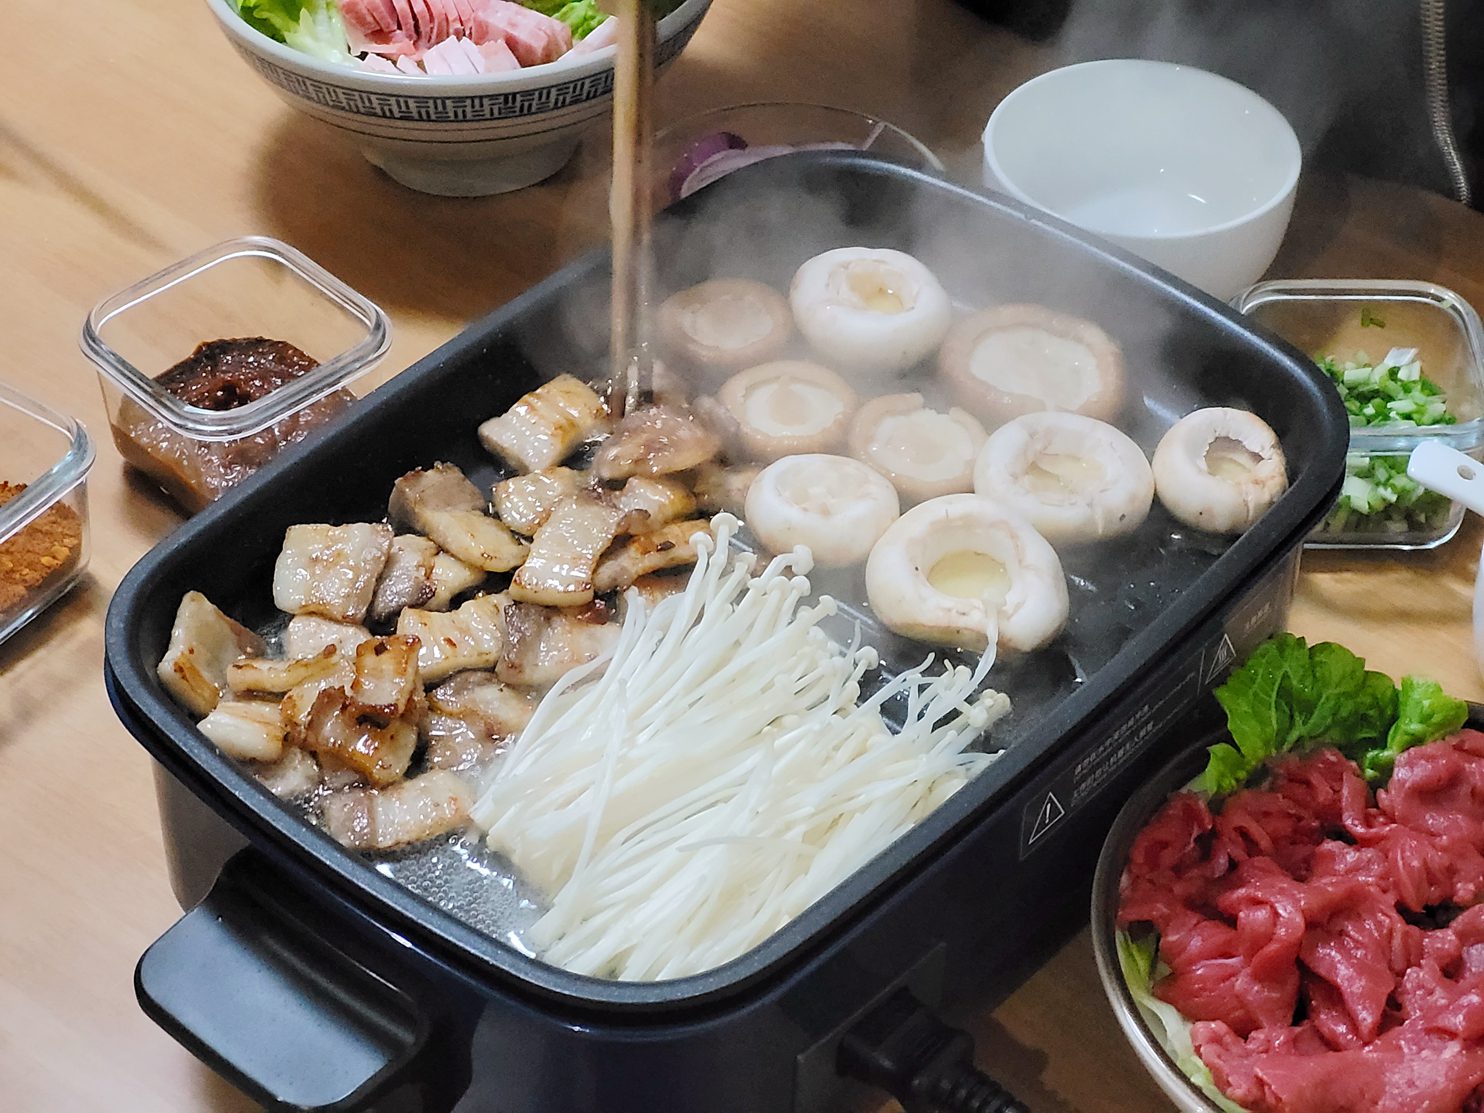 使用一千多的摩飞多功能料理锅是种怎样的体验？